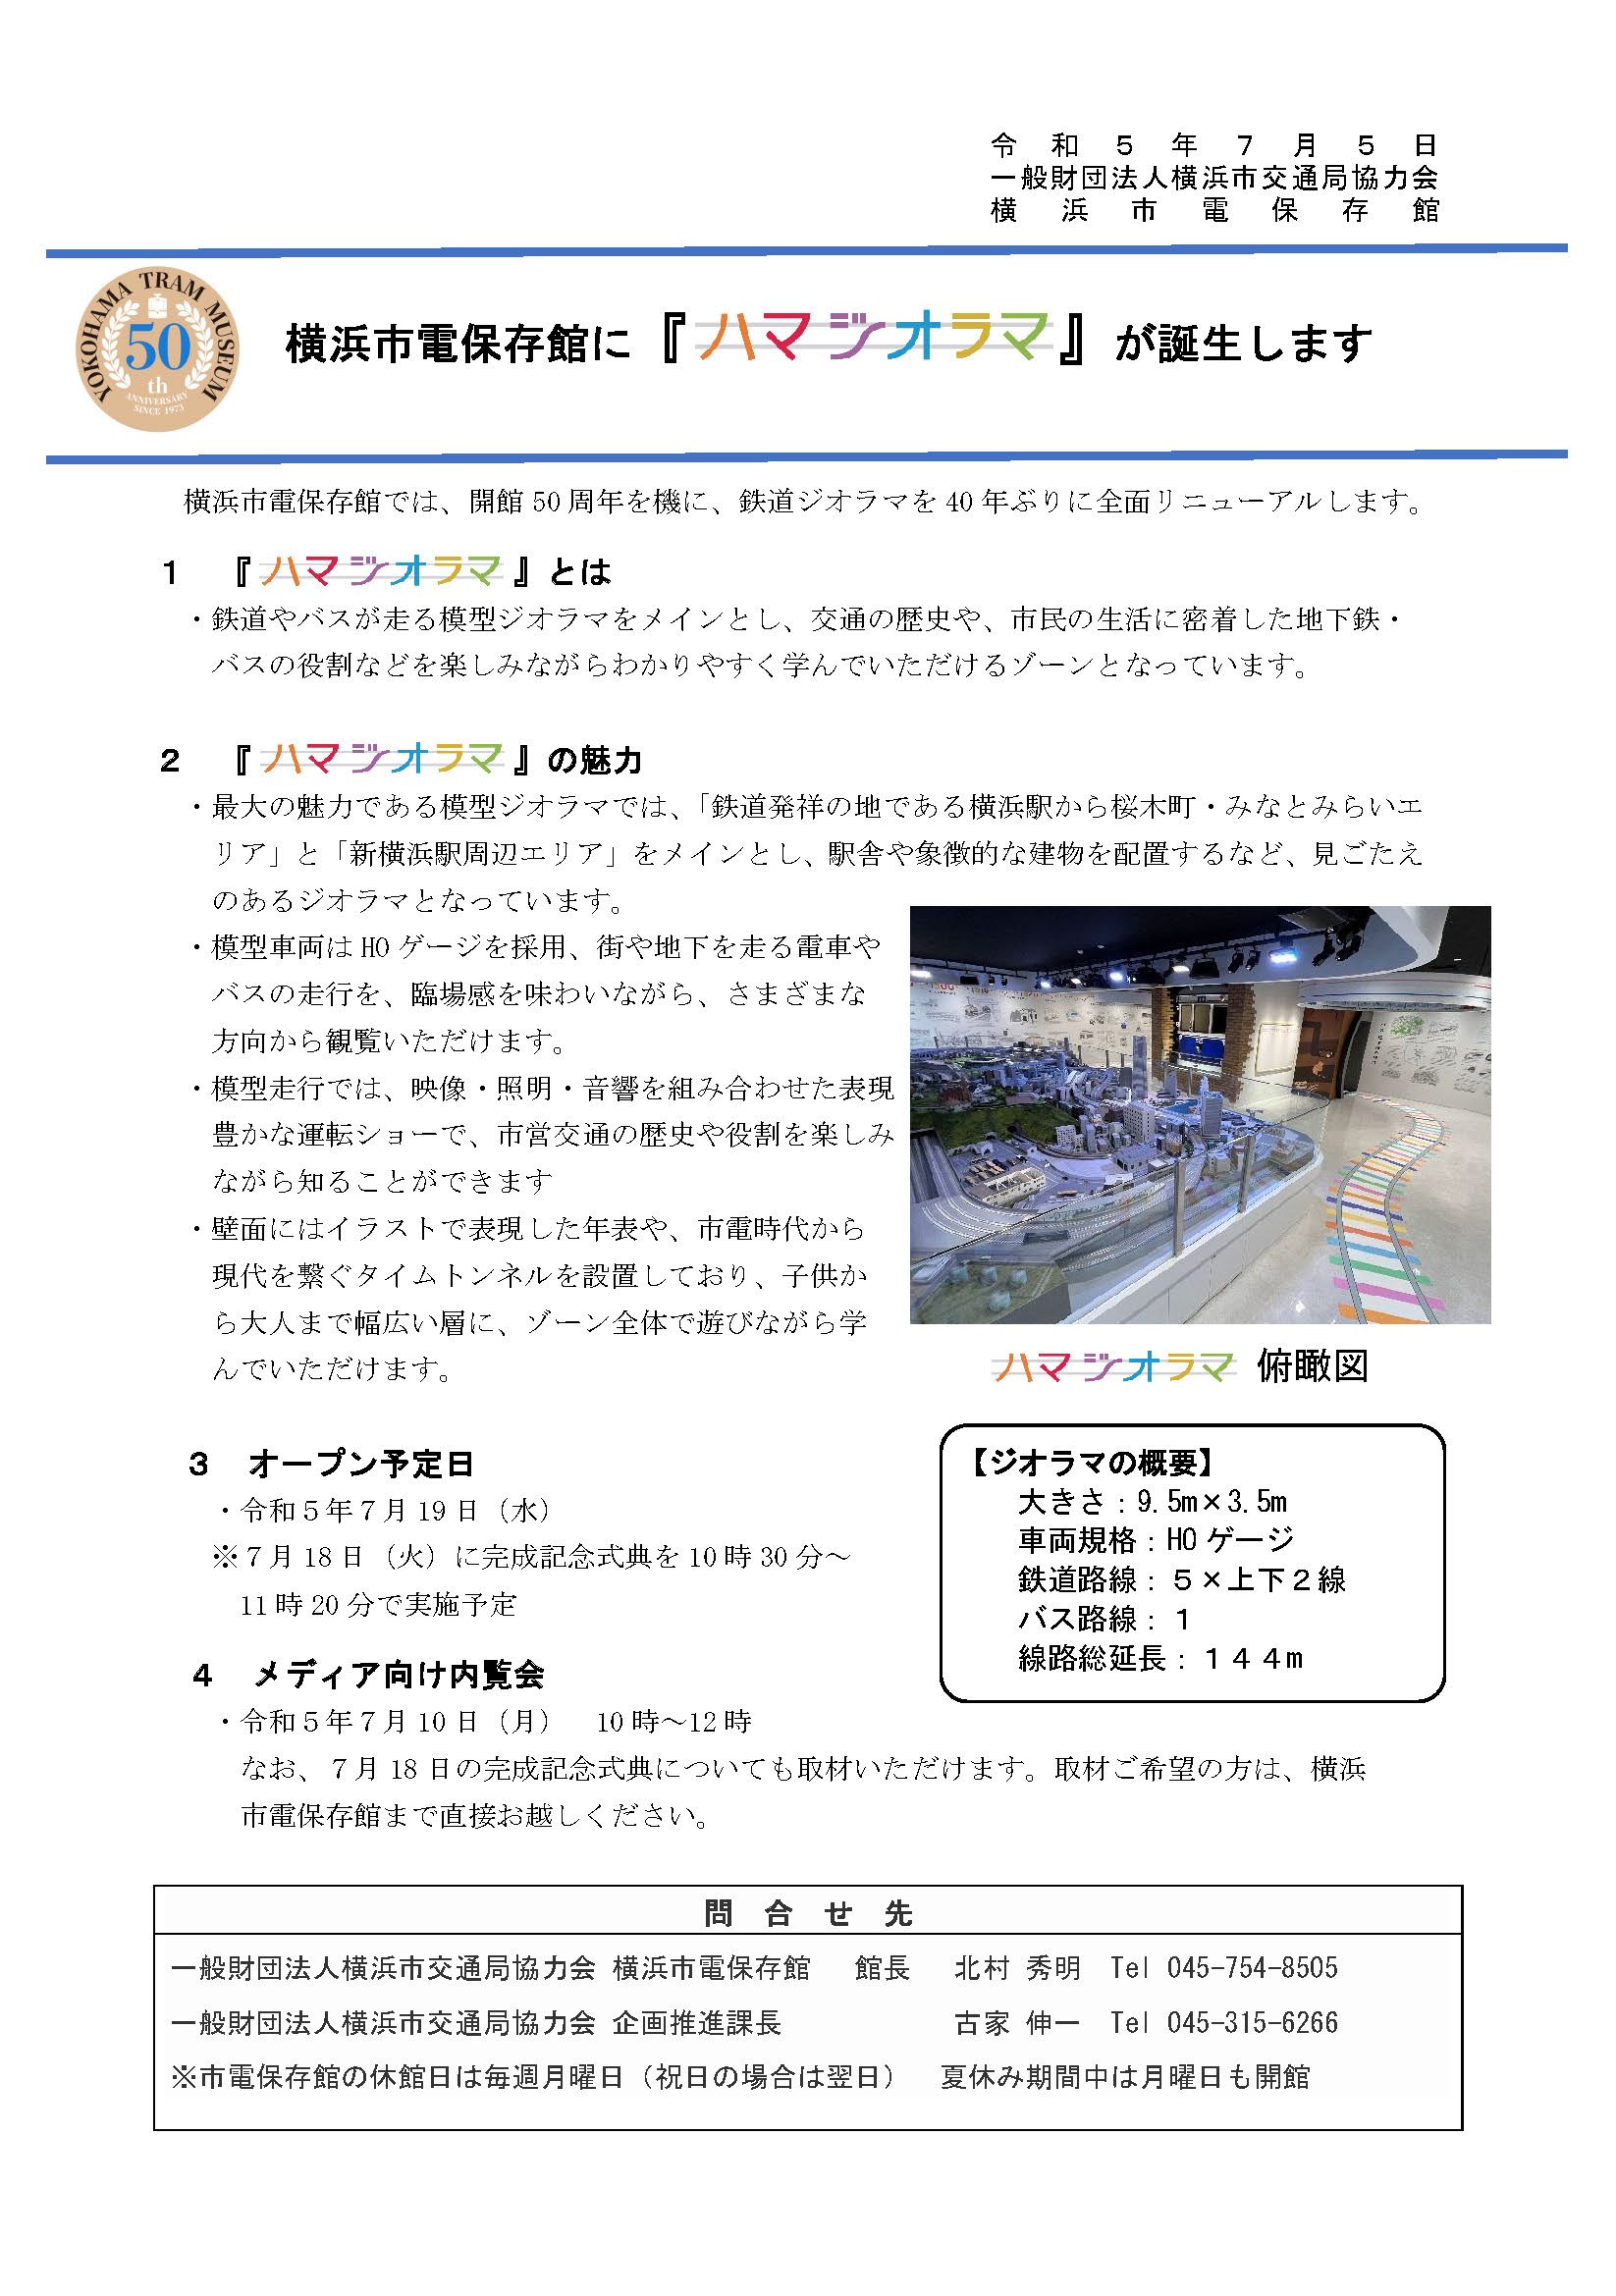 記者発表 _ジオラマリニューアルオープン_横浜市電保存館.jpg